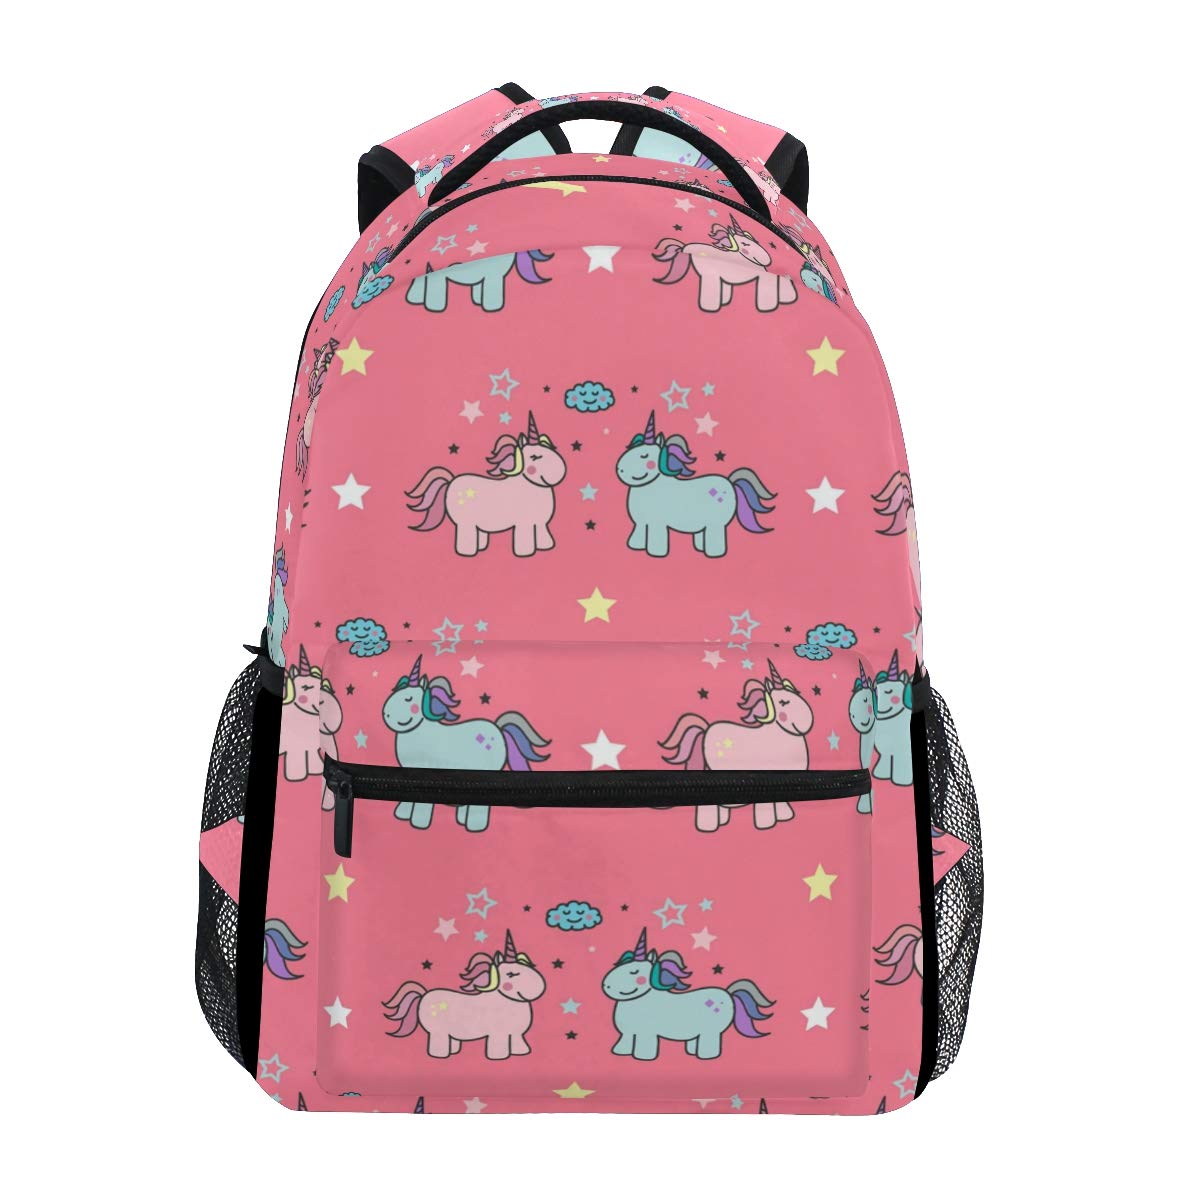 Bookbag clipart pink backpack, Bookbag pink backpack Transparent FREE ...